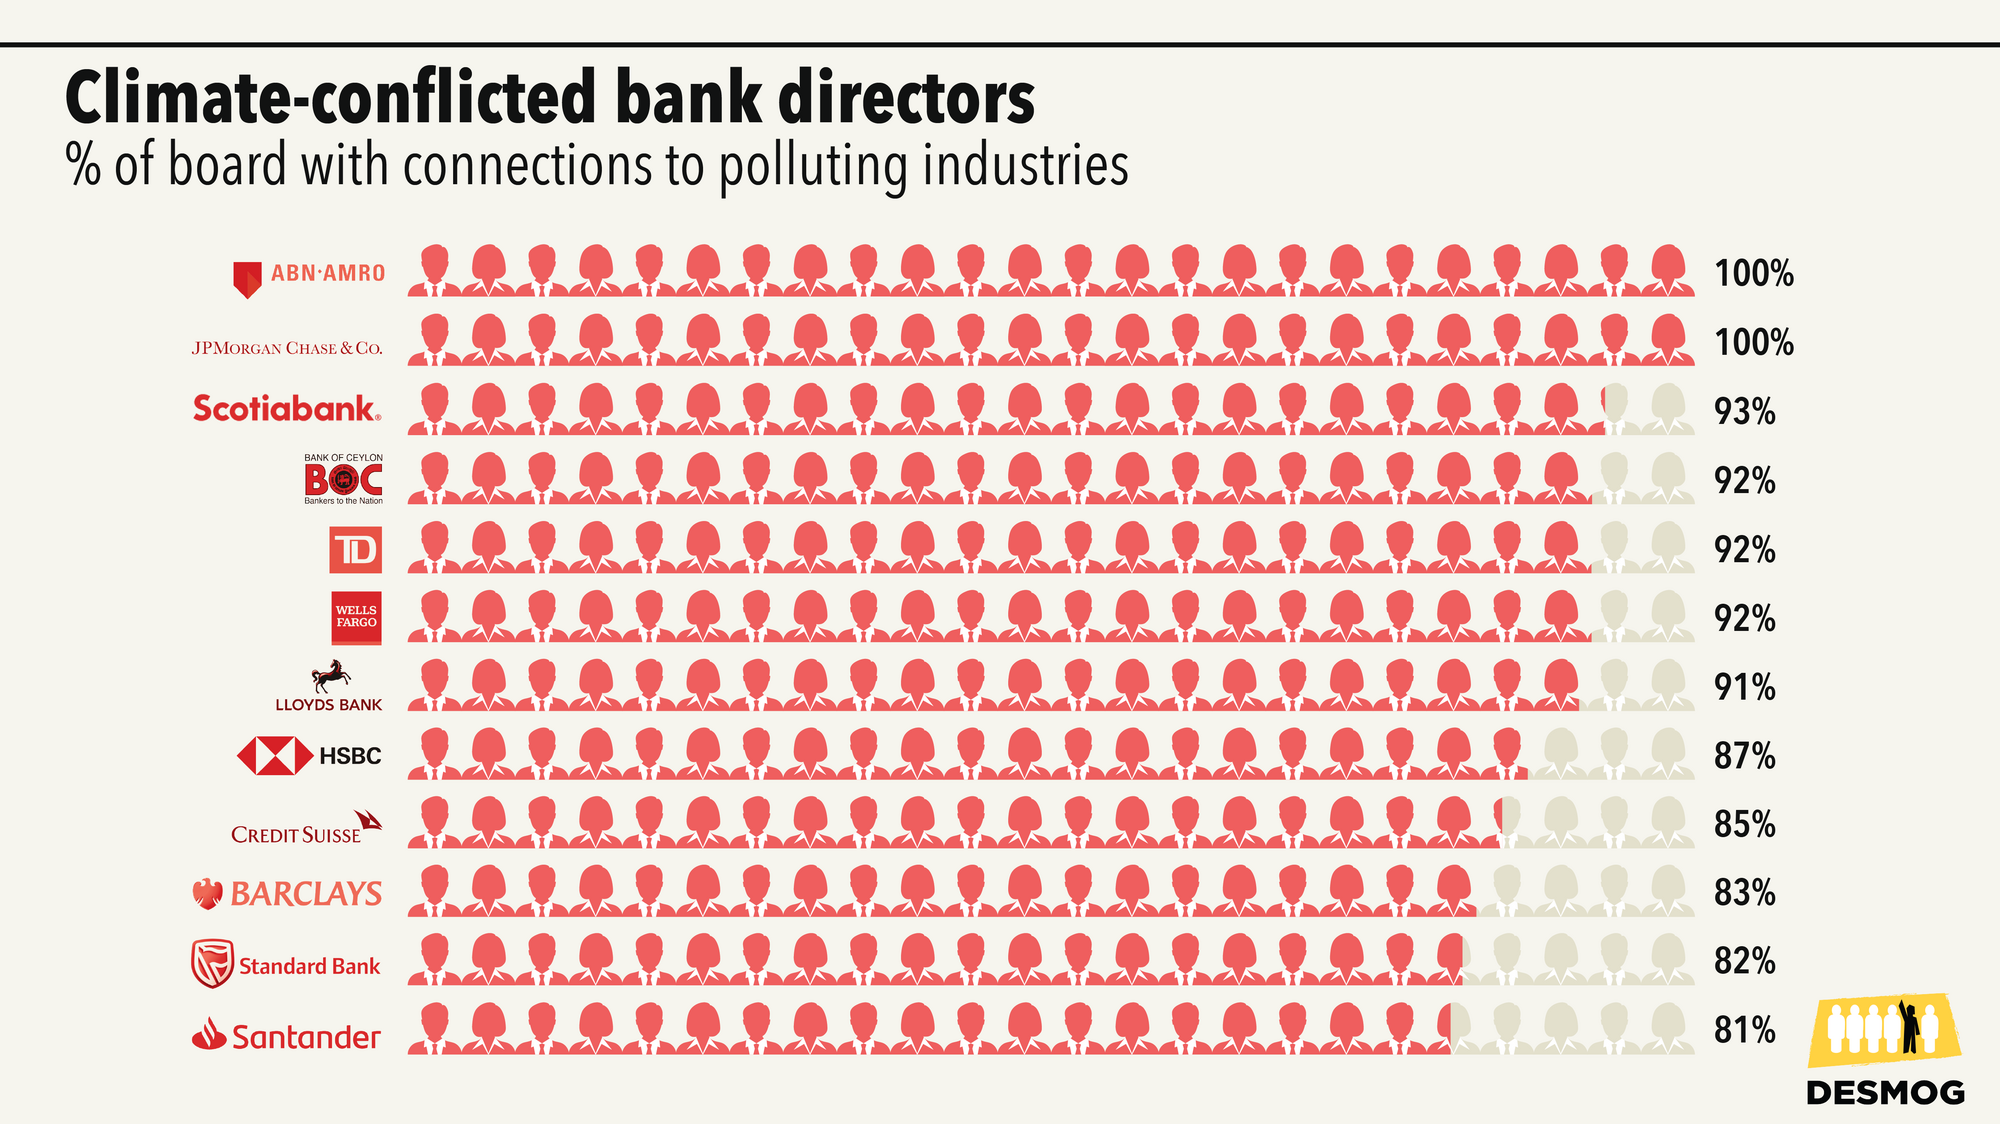 Anteil der Bankmanager einzelner Banken mit klimaschädlichen Verbindungen.